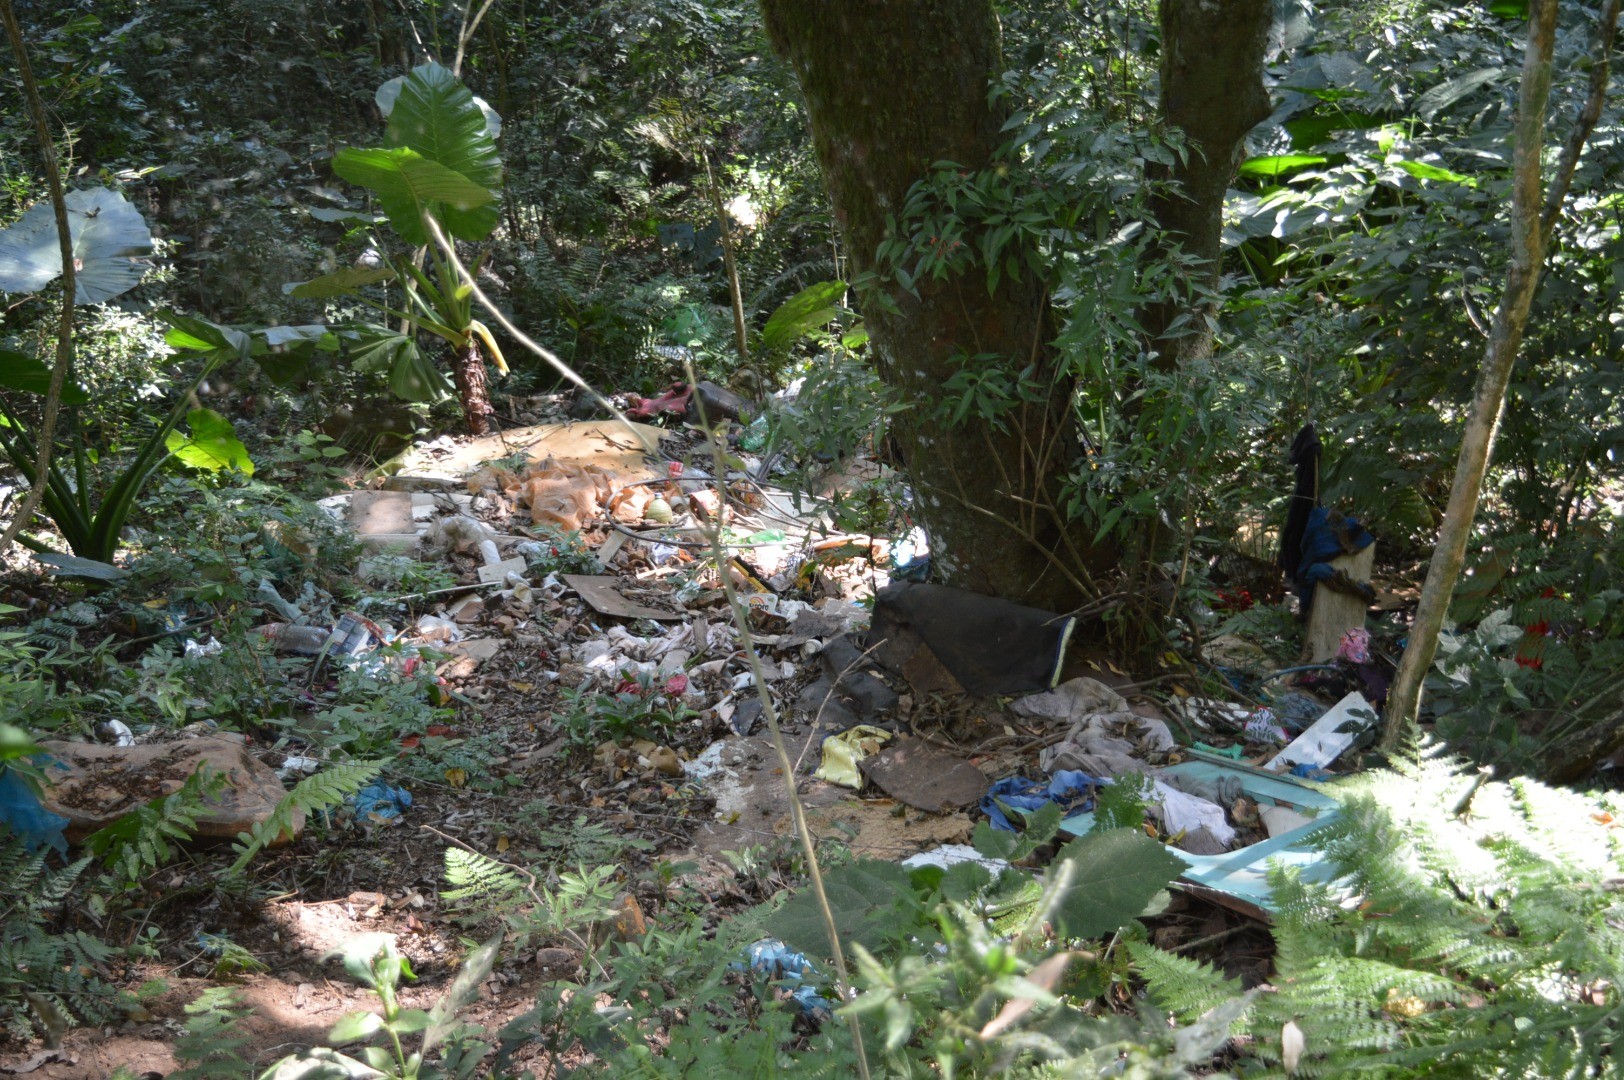 Descaso com a natureza: Ver lixo depositado em local impróprio está cada vez mais comum em Cunha Porã